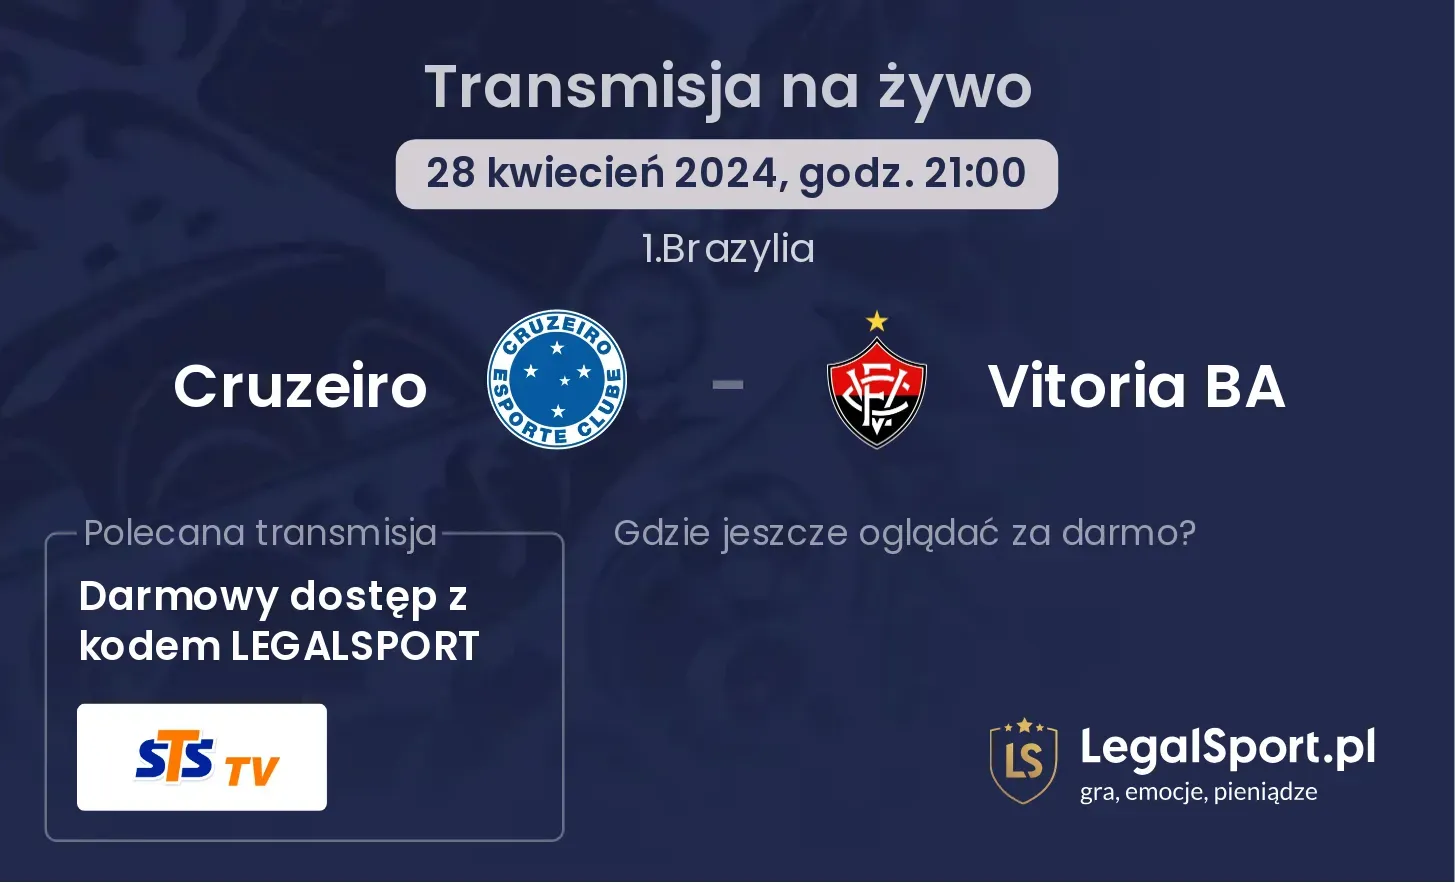 Cruzeiro - Vitoria BA transmisja na żywo